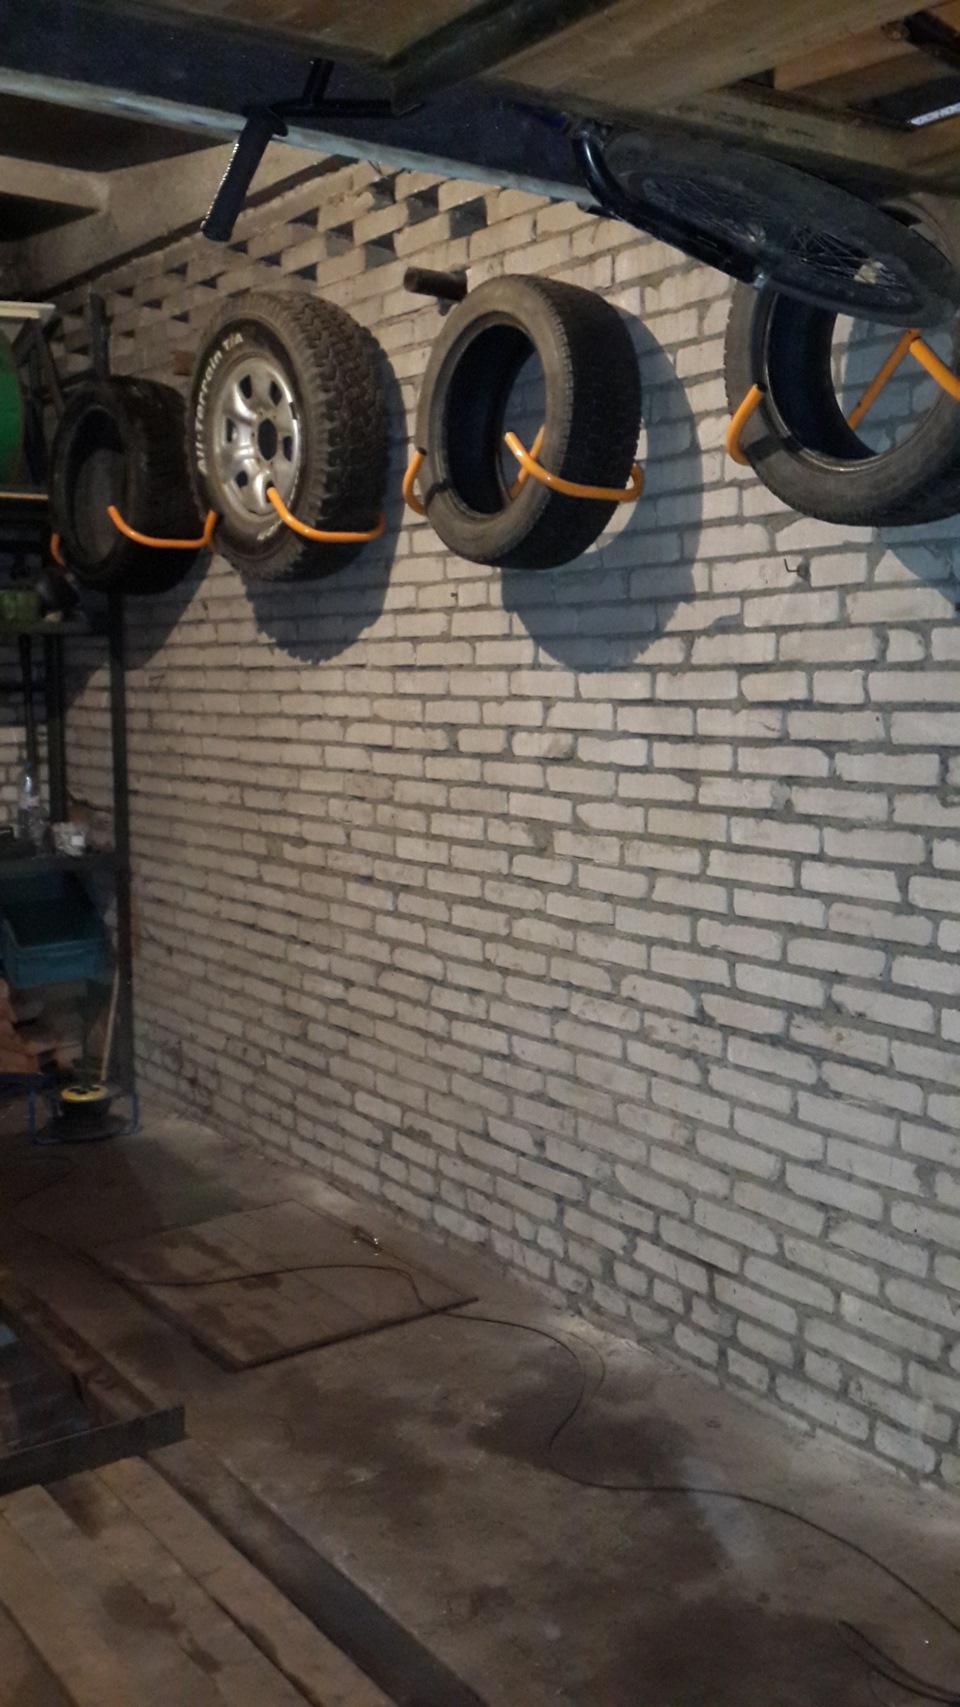 Купить шины гараж. Кронштейн для колес в гараж. Кронштейн для колес на стену в гараже. Кронштейн для хранения колес в гараже. Кронштейны для хранения колес в гараже на стене.